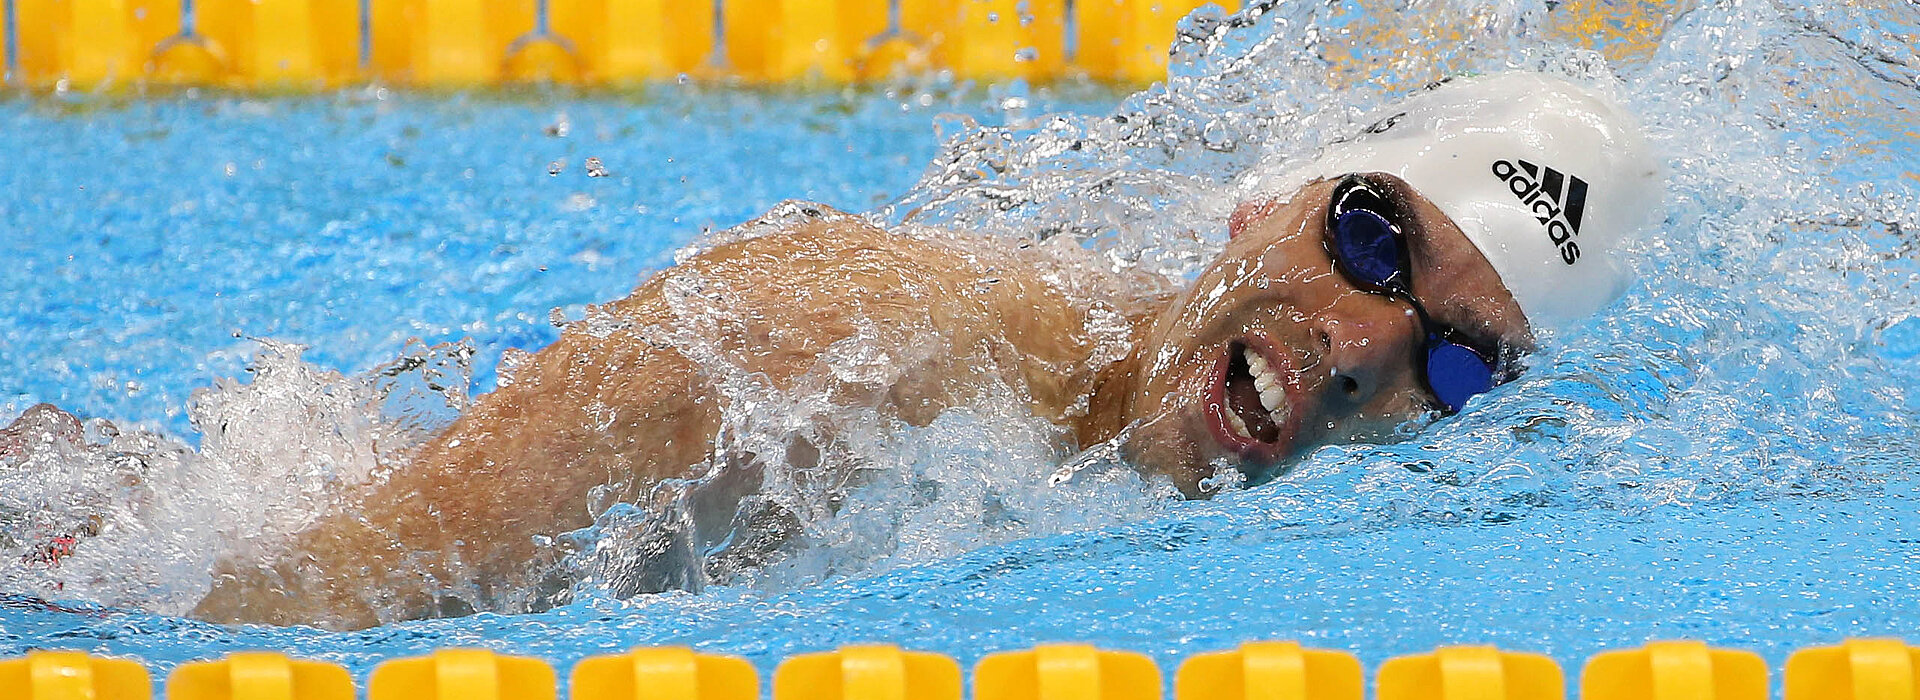 Na foto, aparece o atleta Daniel Dias nadando 